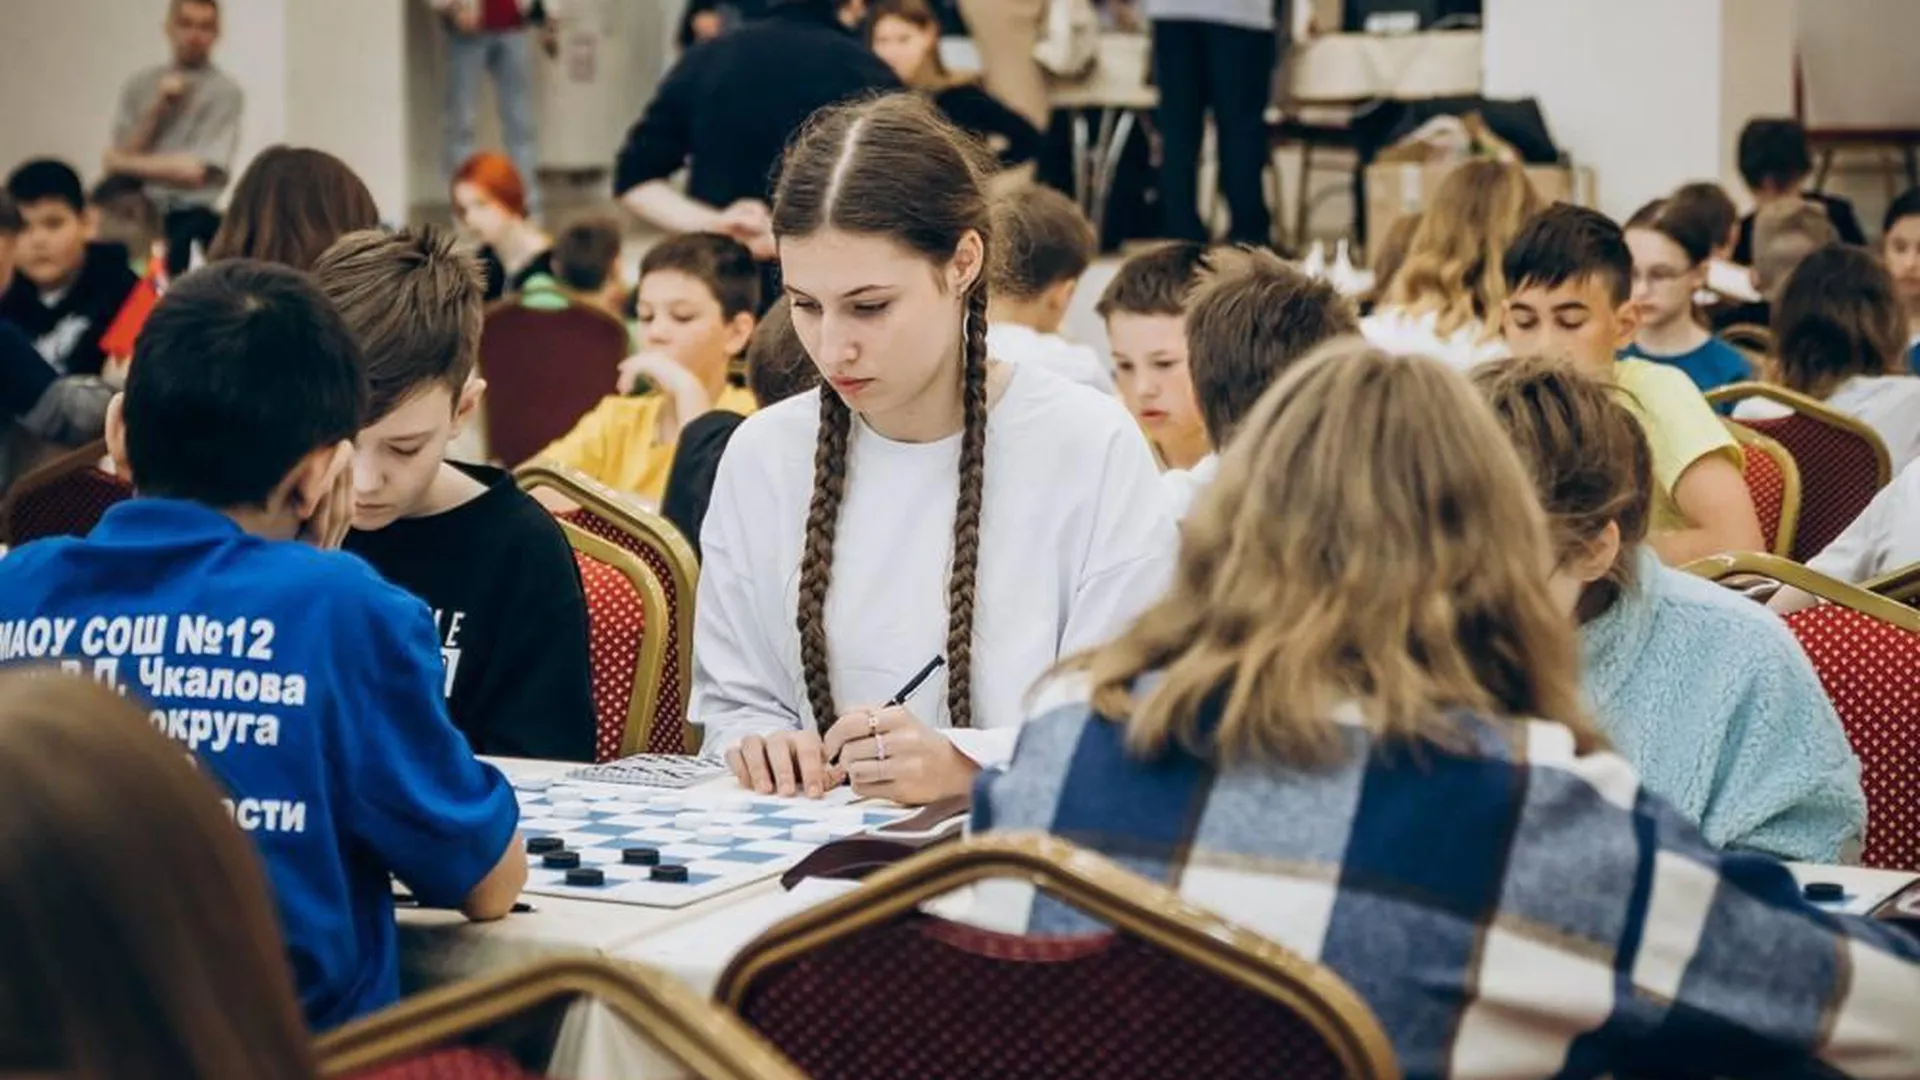 Федерация шашек Московской области